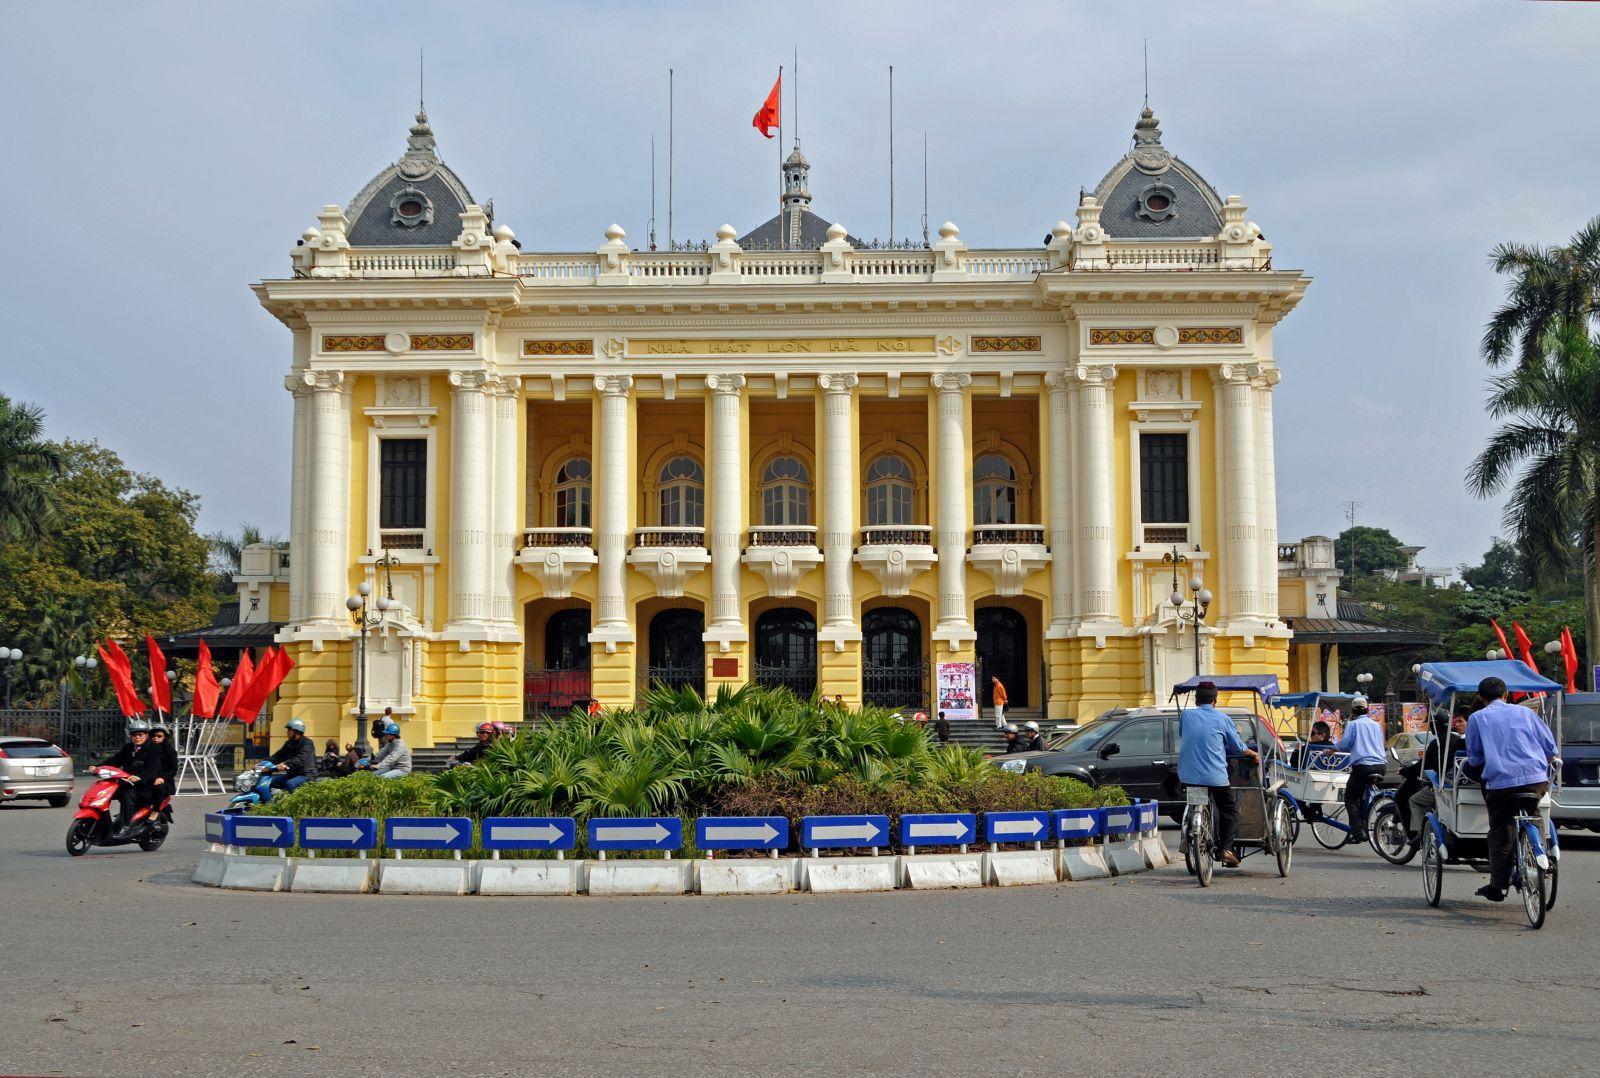 PHONG CÁCH THIẾT KẾ NHÀ Ở THEO LỐI KIẾN TRÚC TÂN CỔ ĐIỂN PHÁP - Viet Nam Smart City